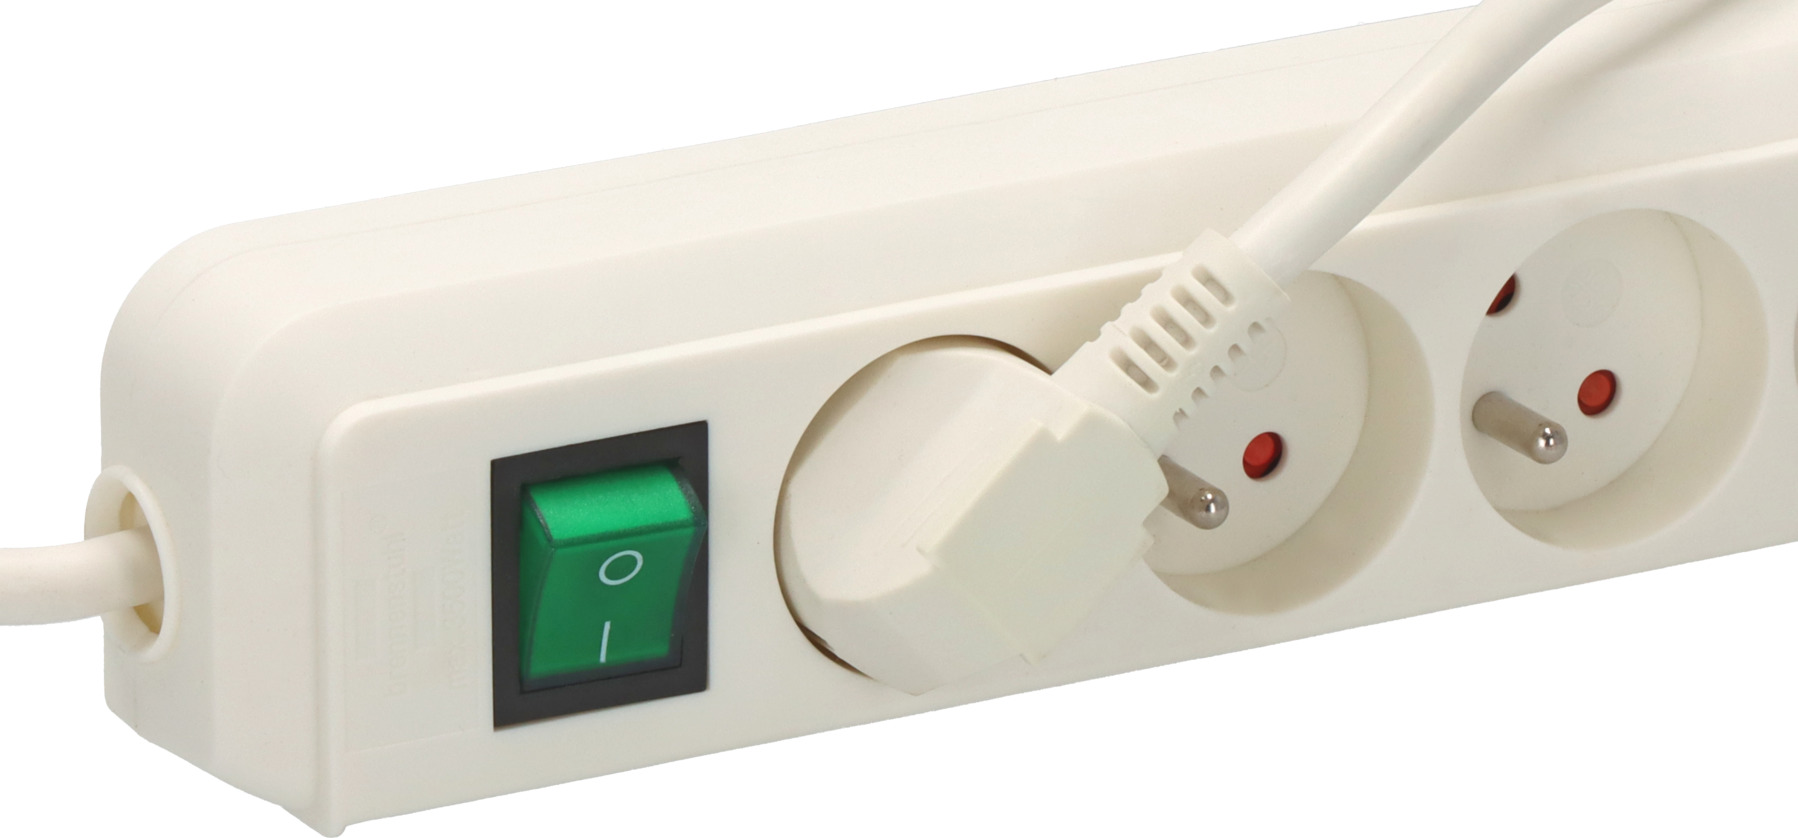 Multiprise Eco-Line 8 prises avec interrupteur, blanche, 3m H05VV-F 3G1,5